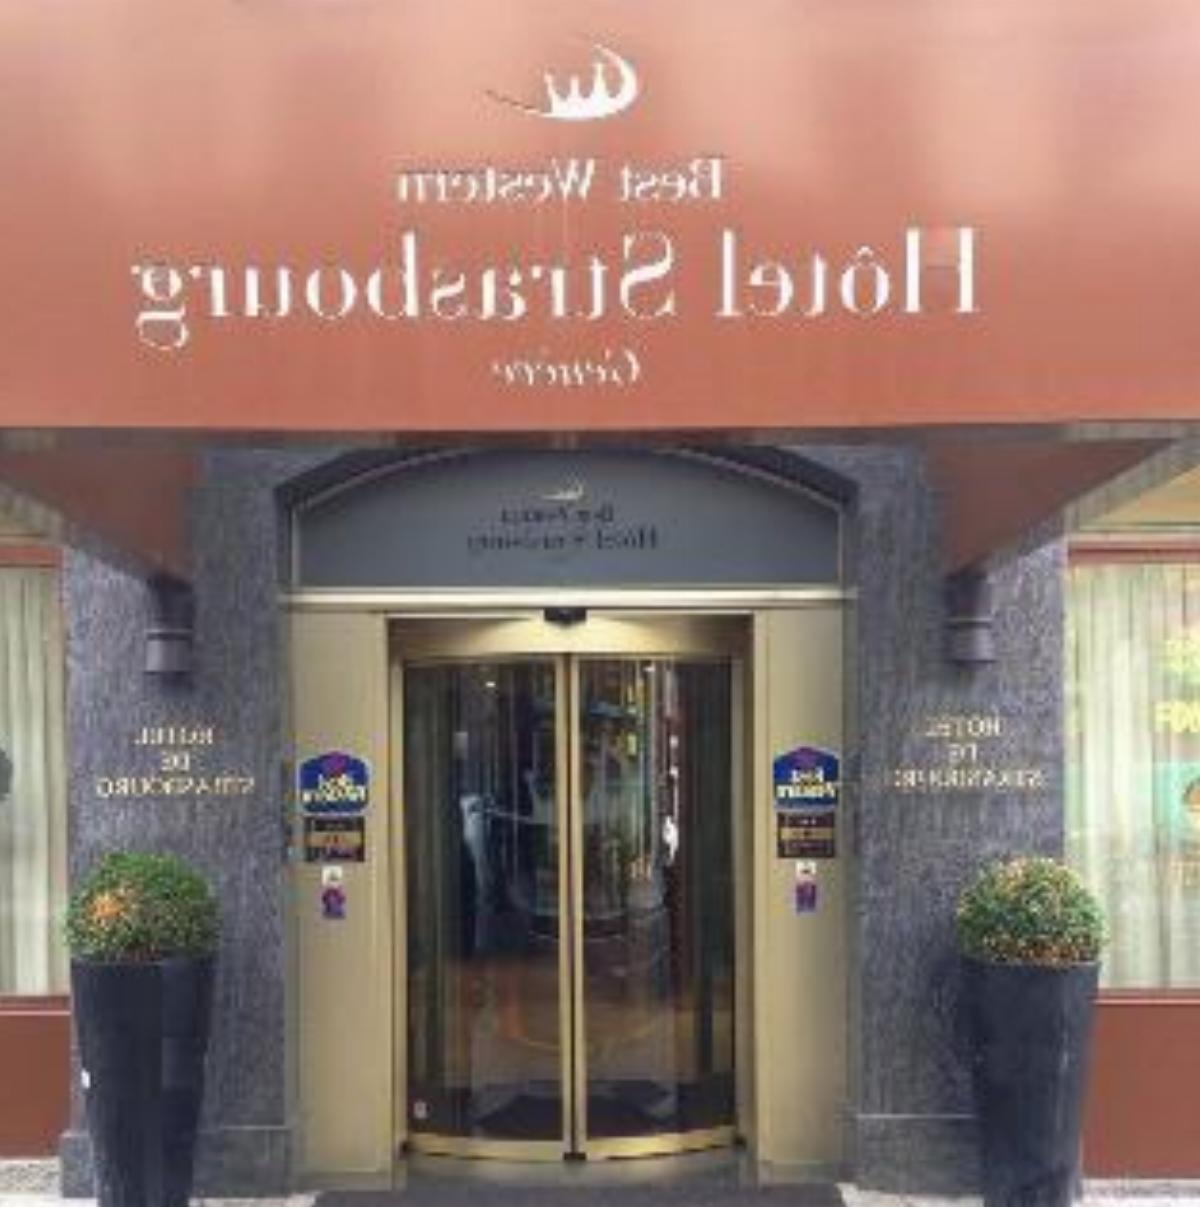 Best Western Hotel Strasbourg Hotel Geneva Switzerland